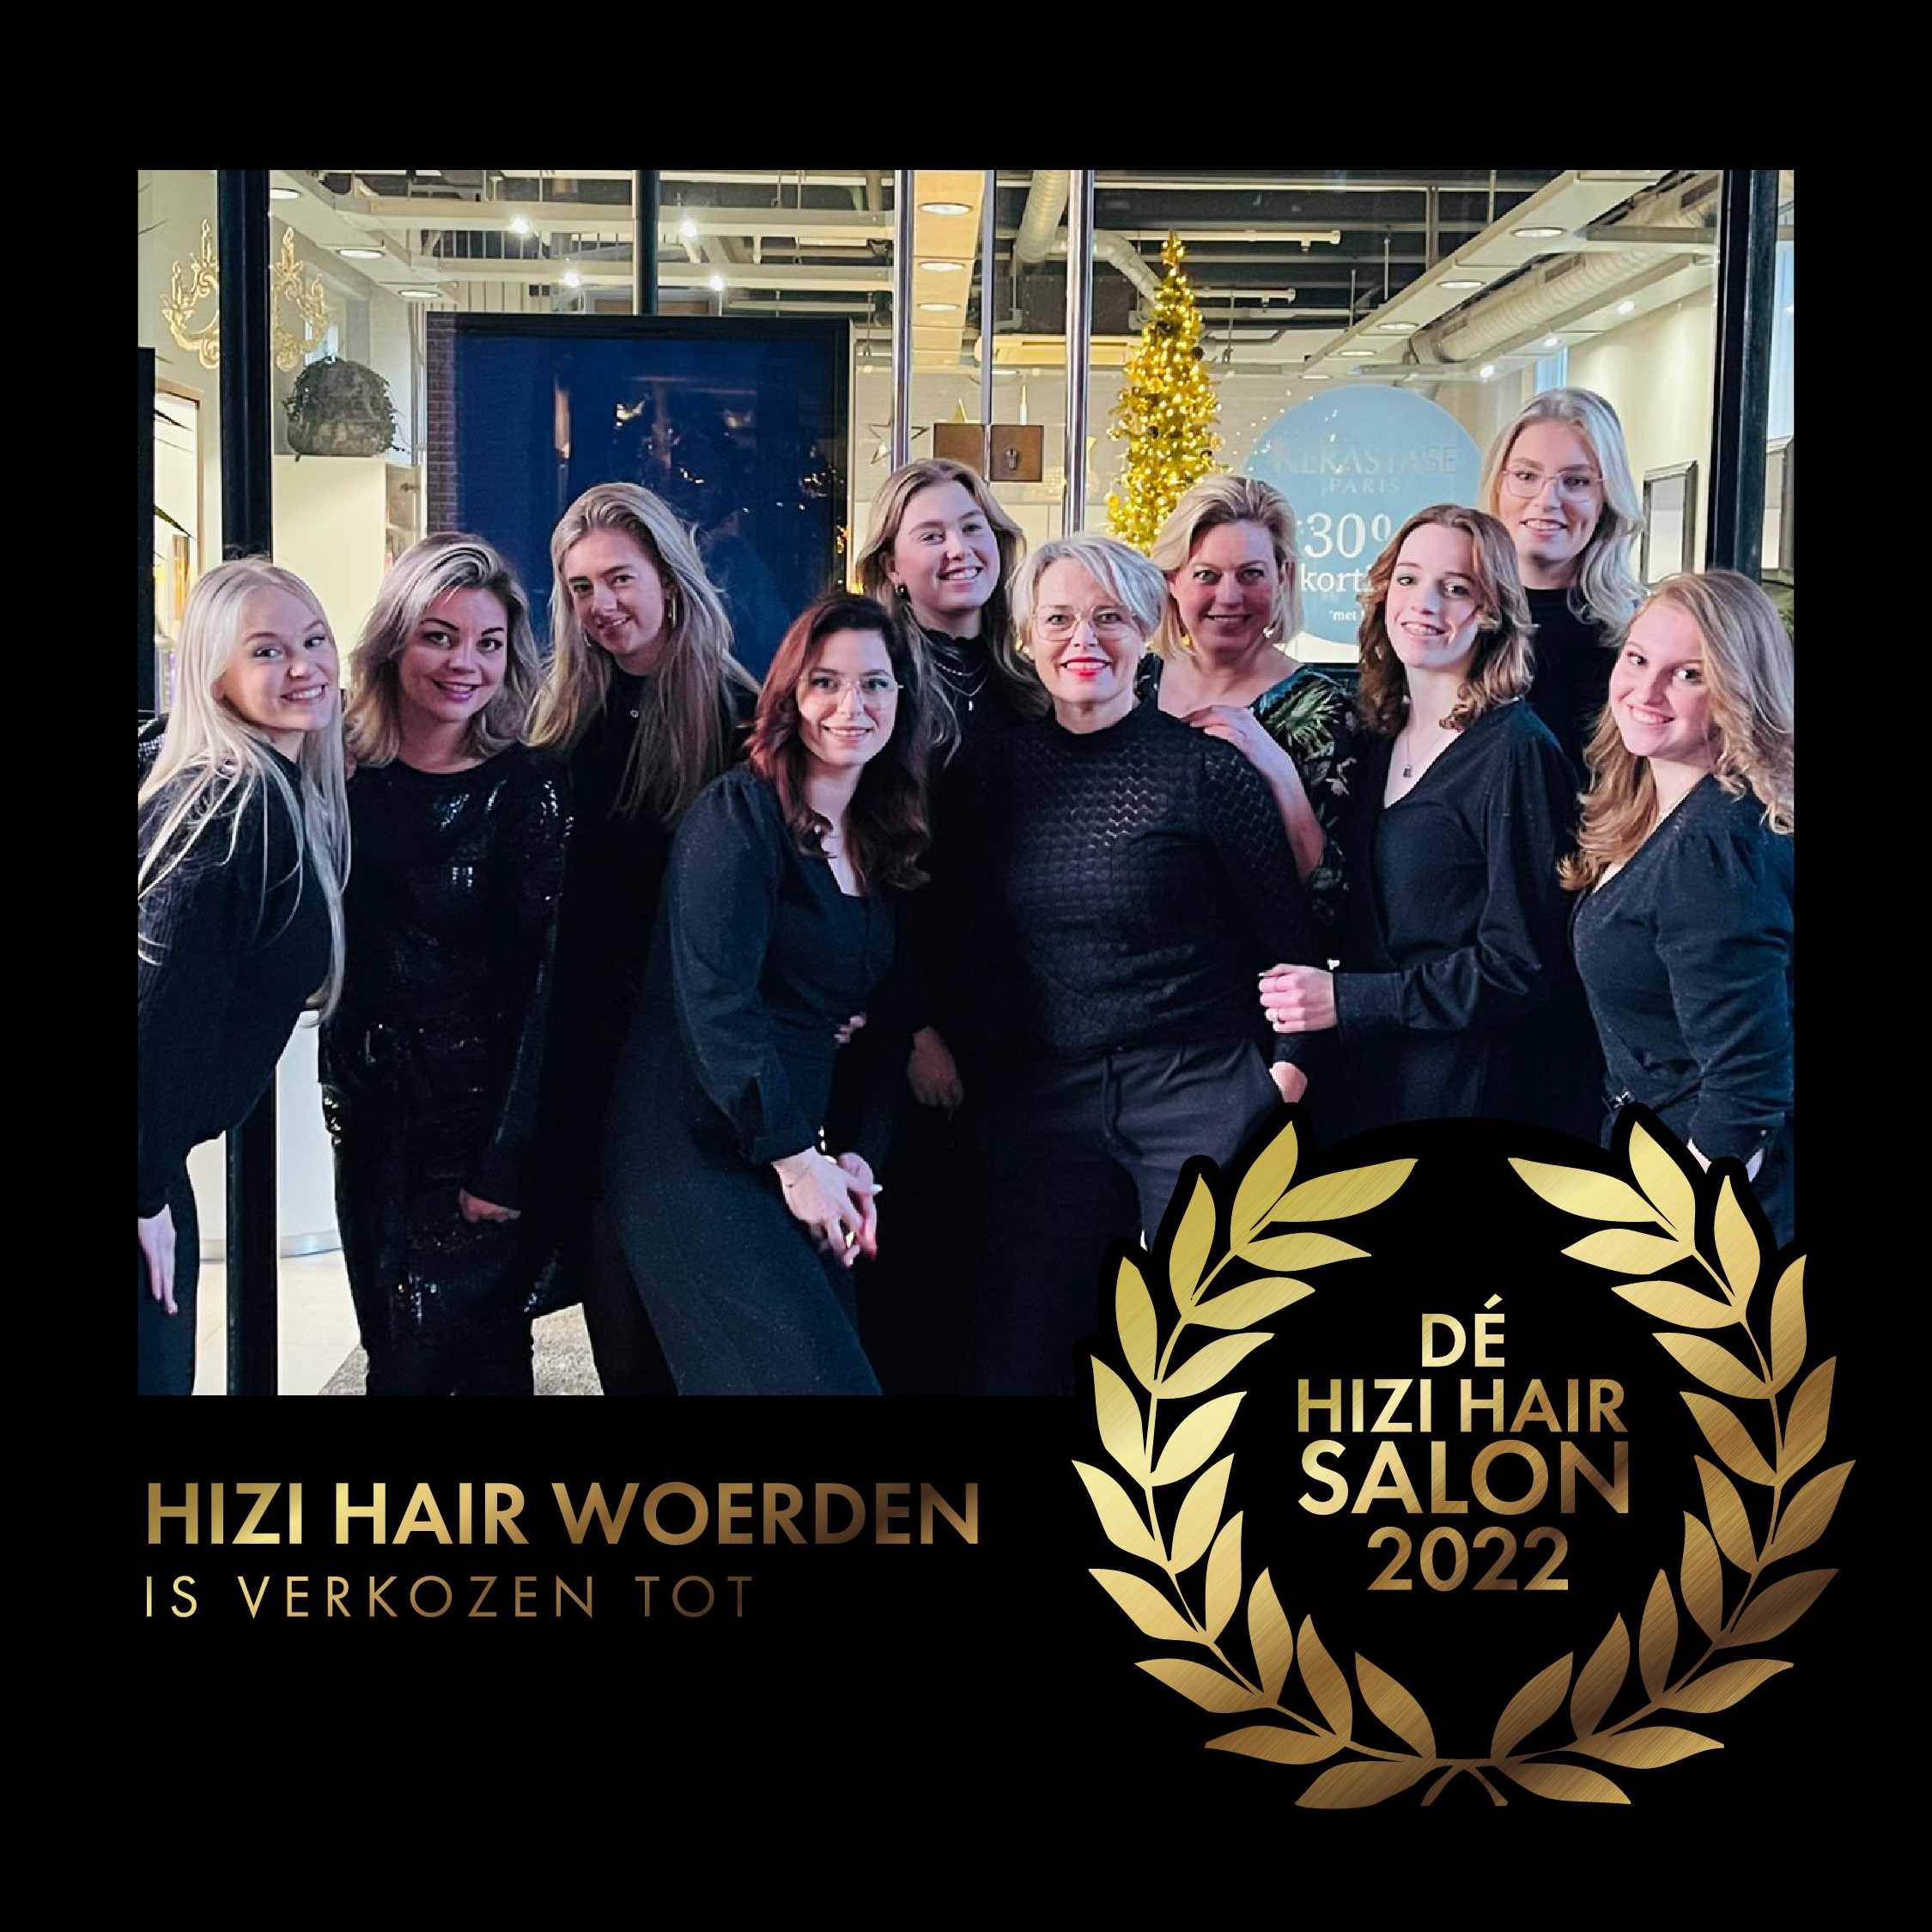 Hizi Hair Woerden - Salon van het jaar 2022